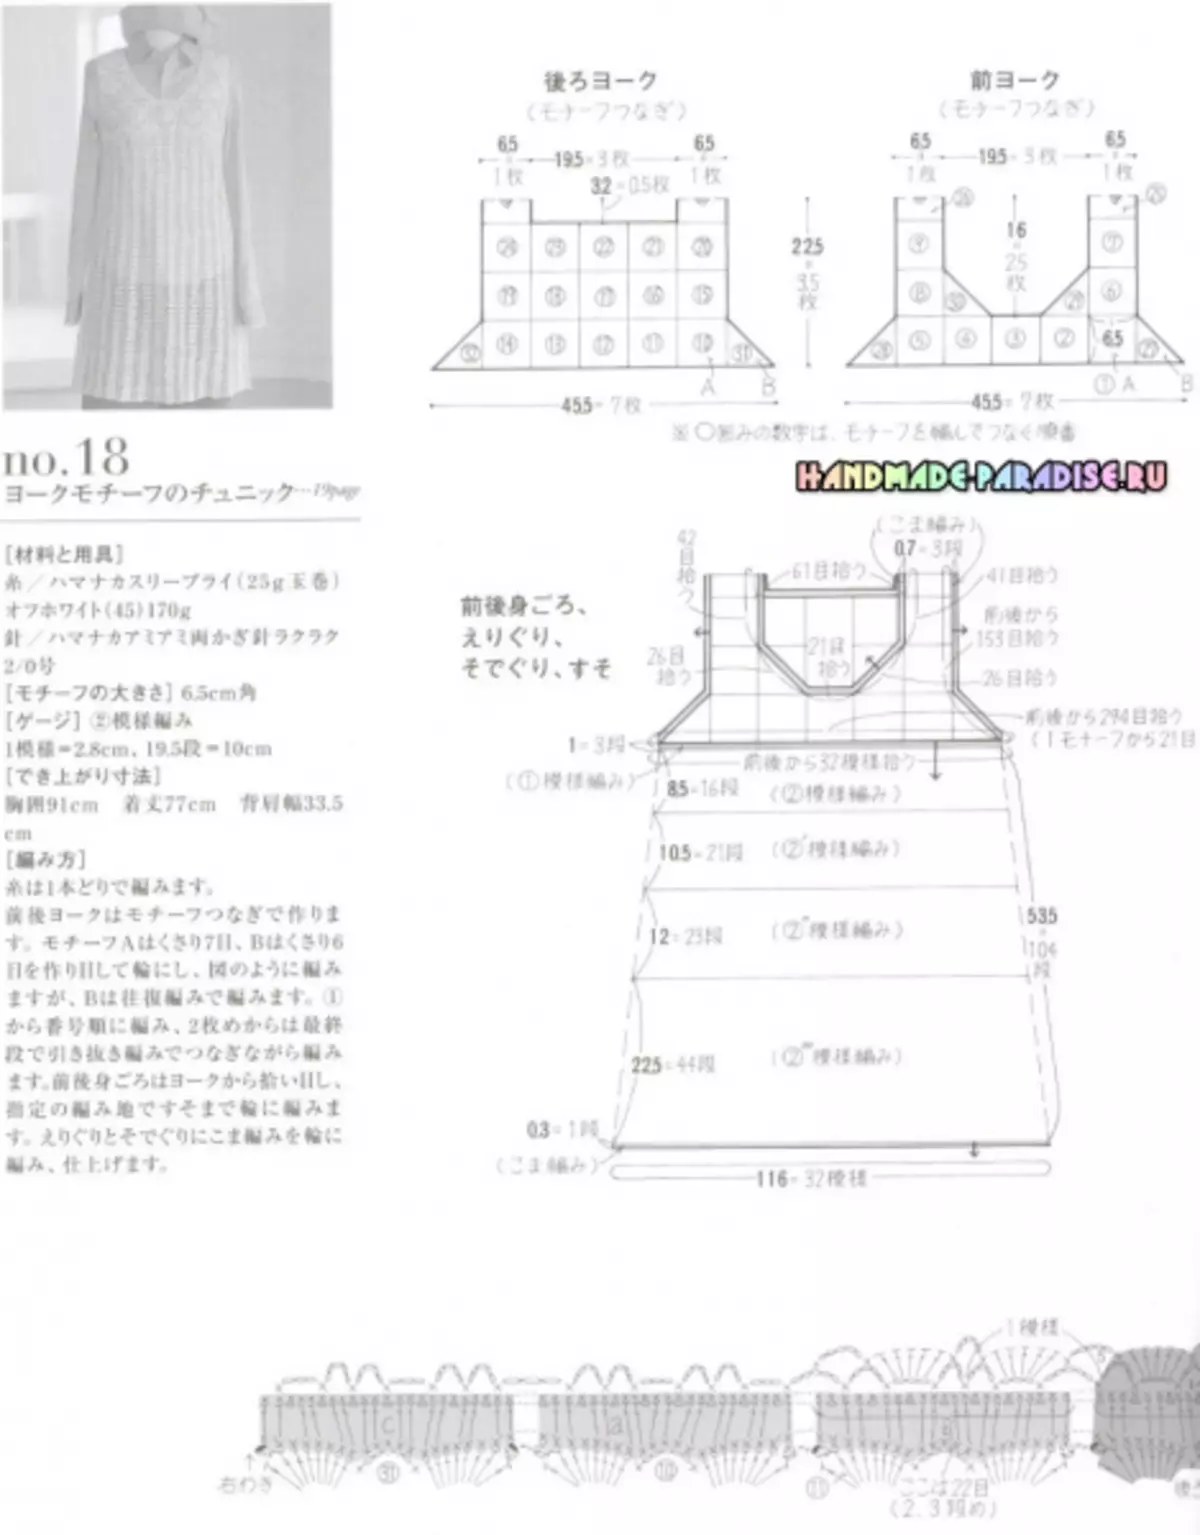 Elegante de tricô crochet. Revista japonesa com esquemas